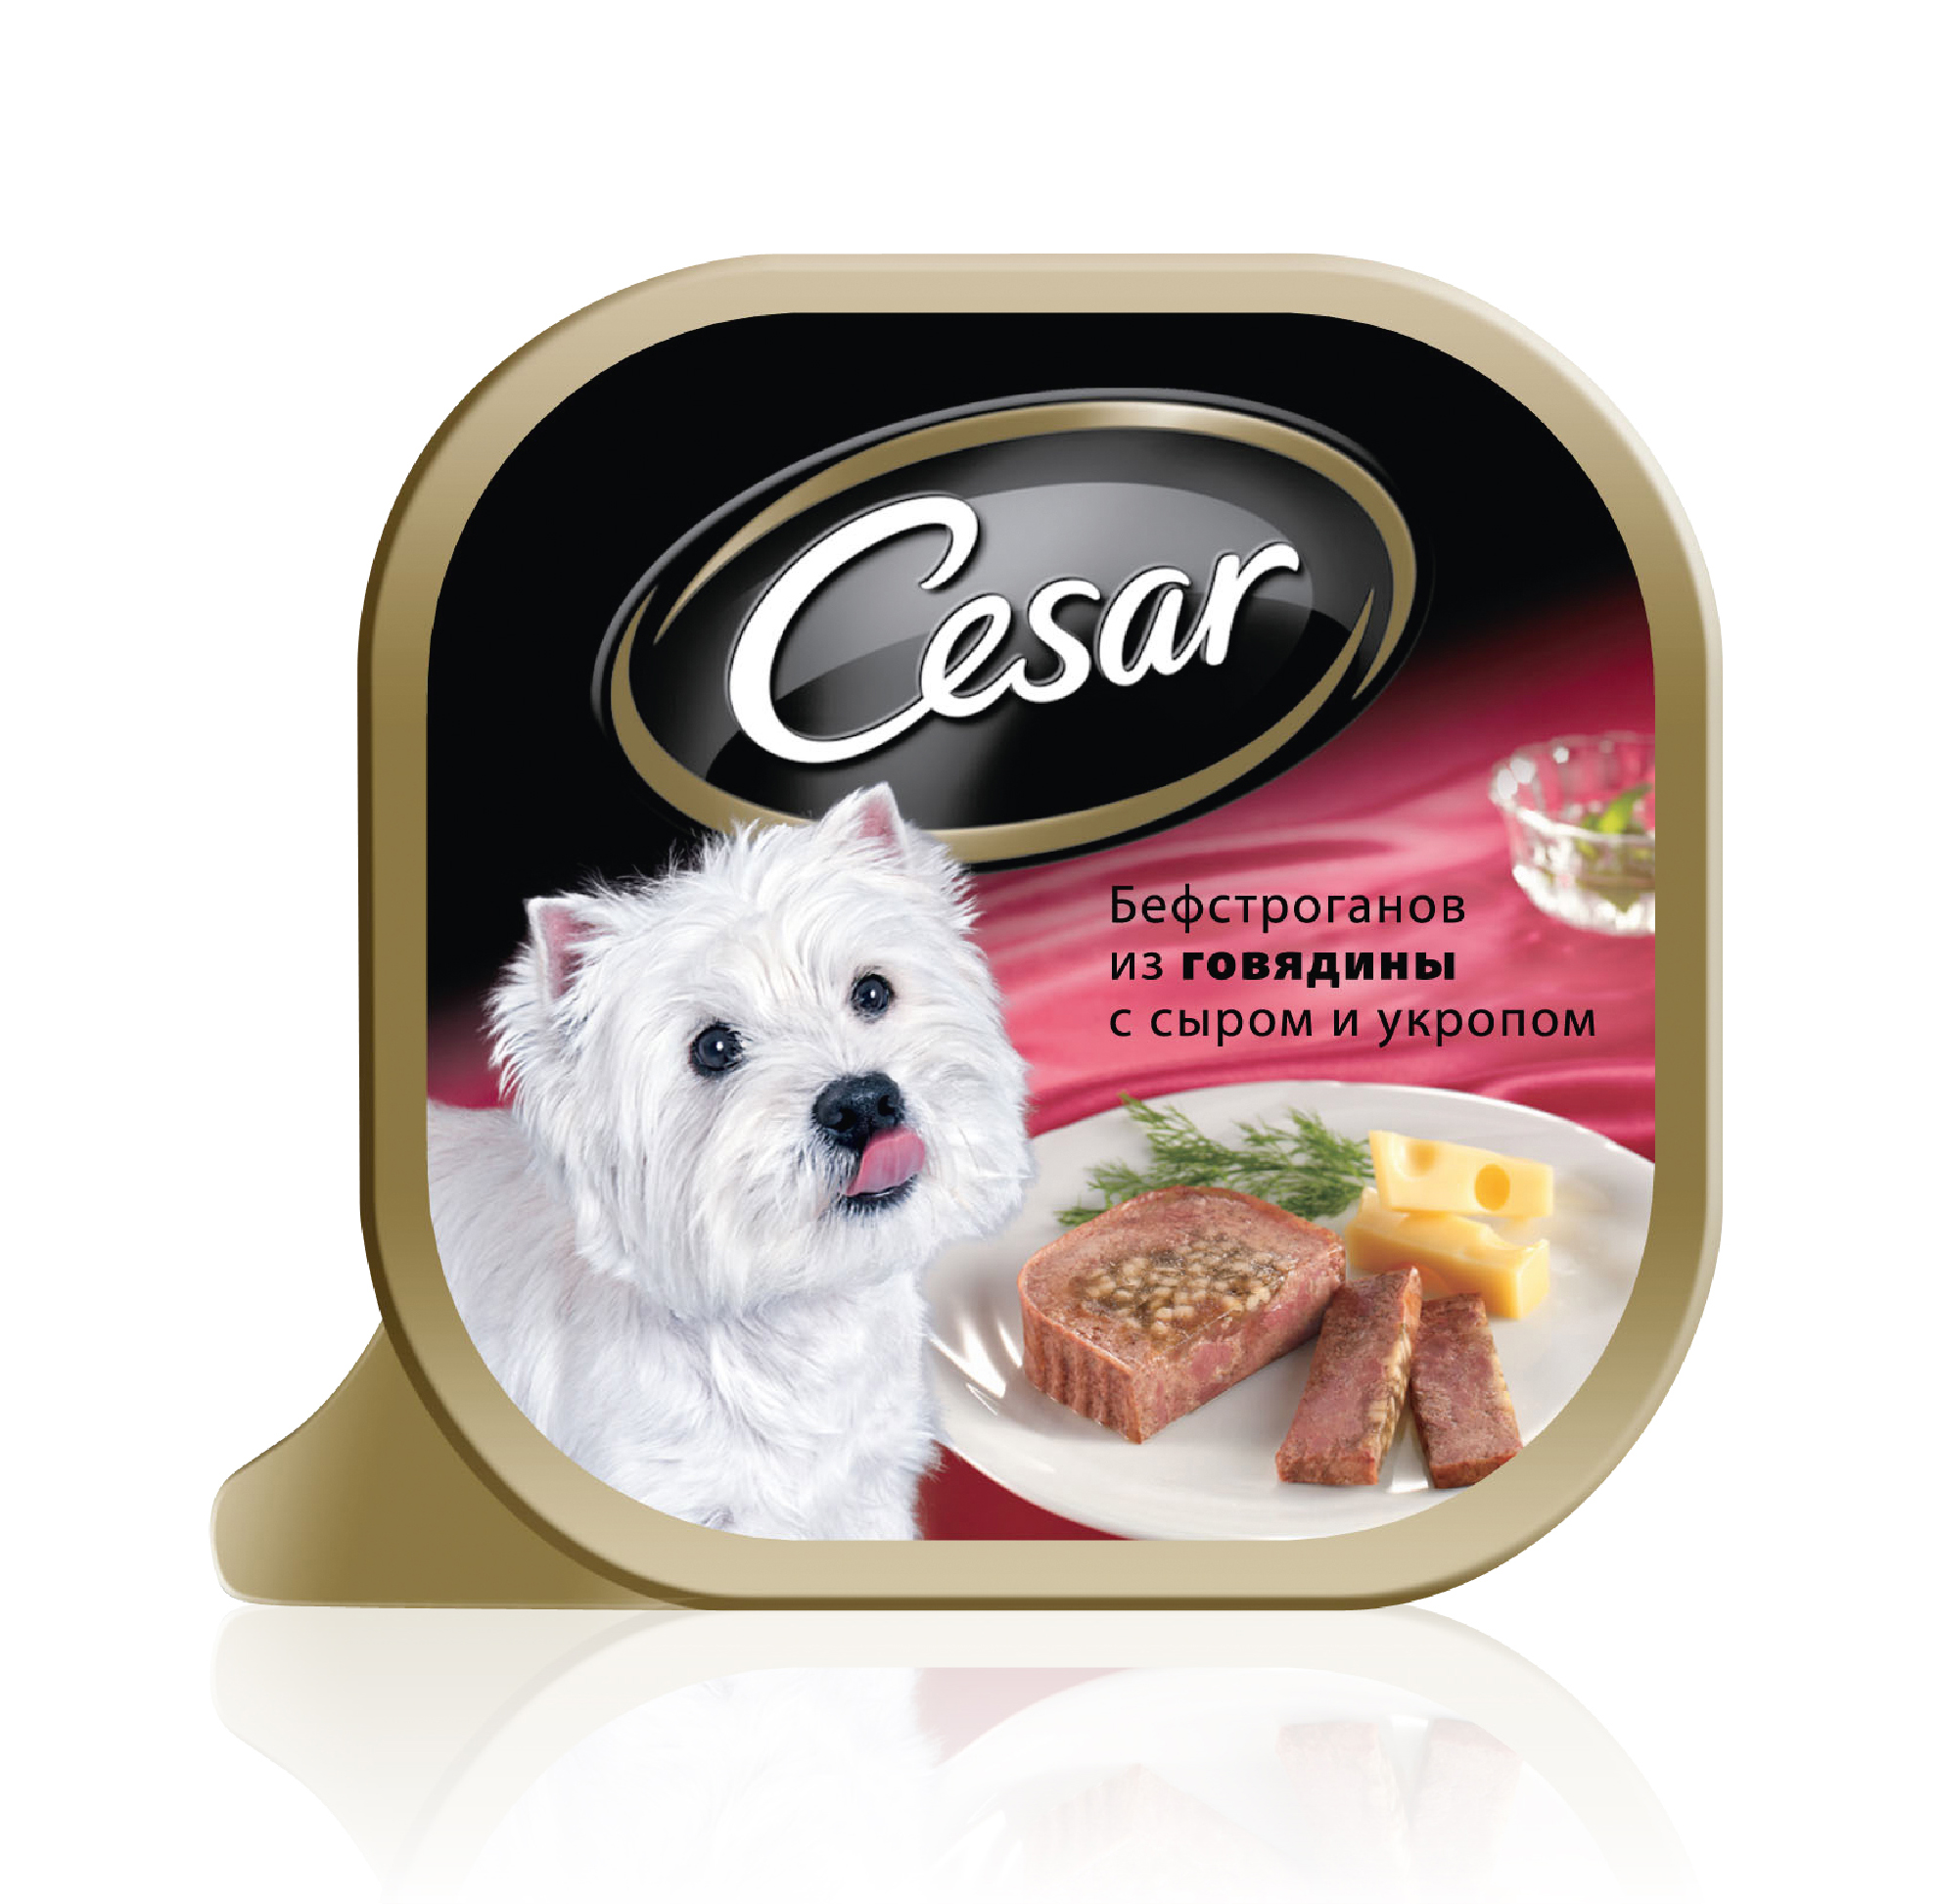 фото Консервы для собак cesar, бефстроганов из говядины с сыром и укропом, 100г